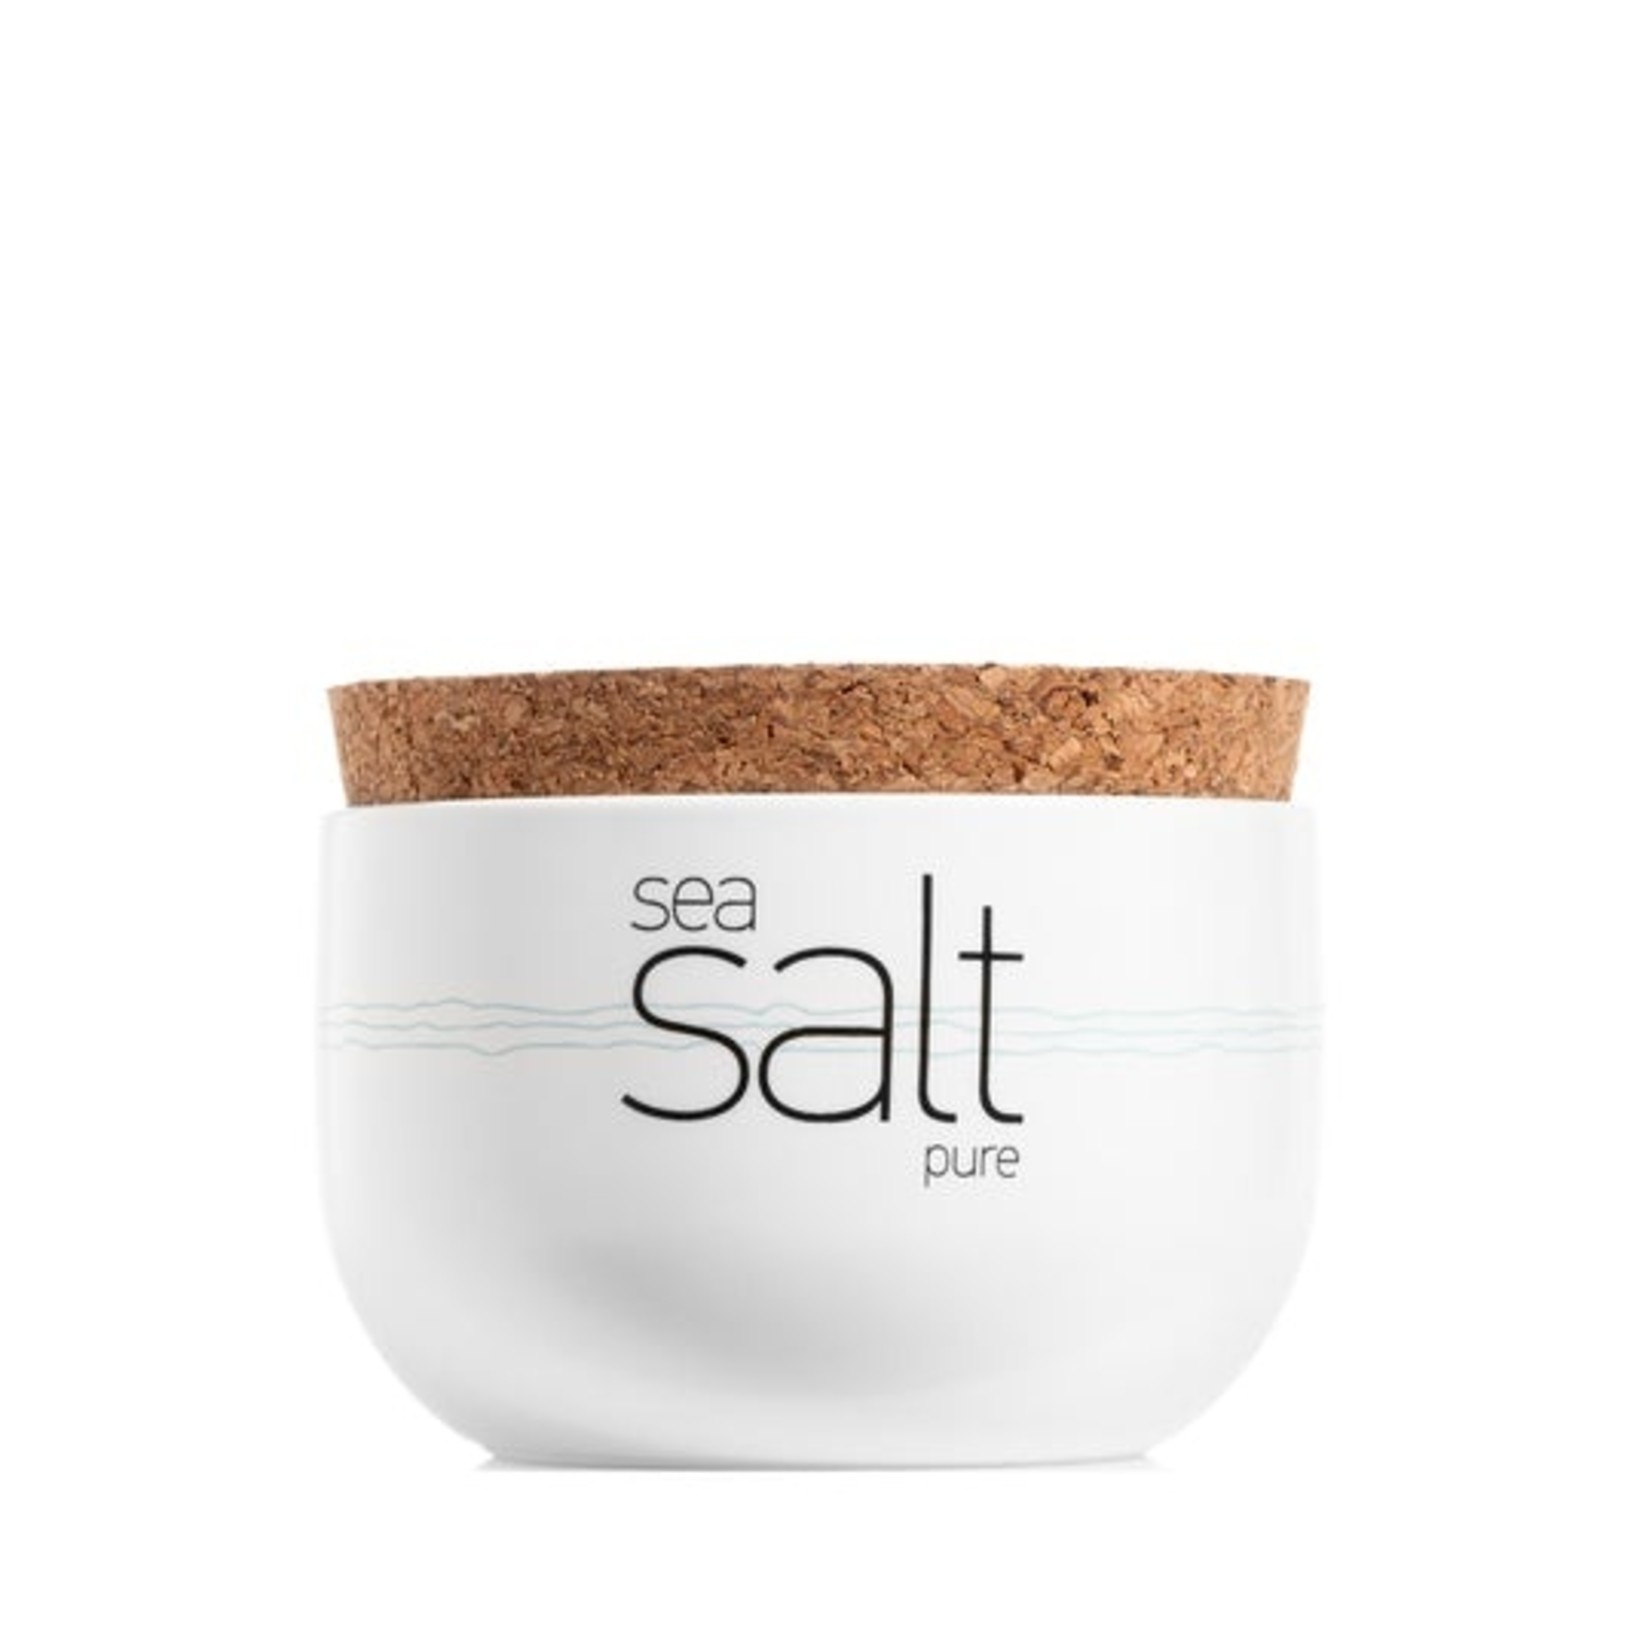 Sea Salt Pure